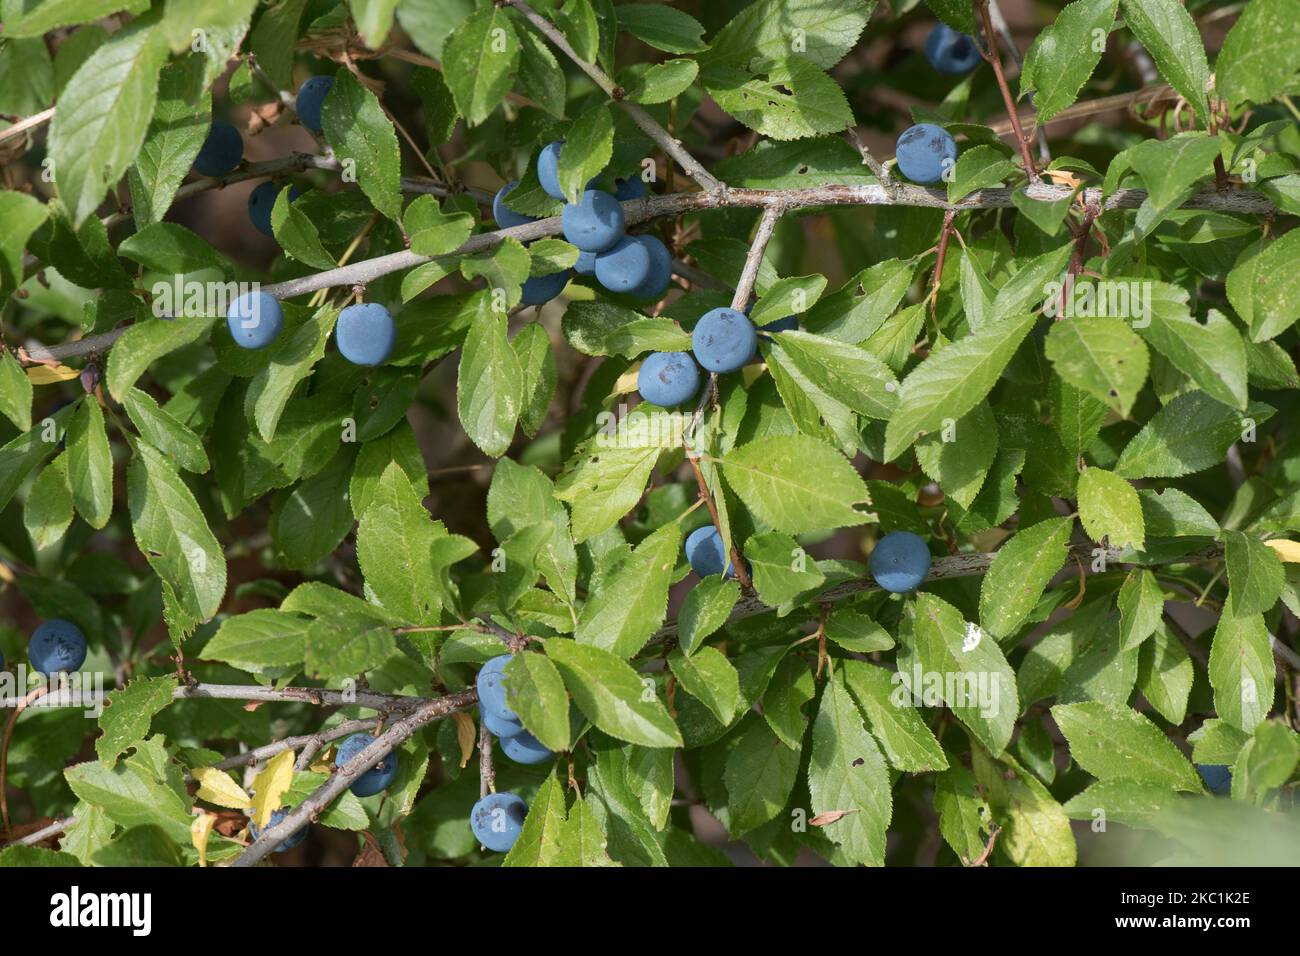 Globes mûres, fruits ronds de noir (Prunus spinosa) avec fleur pourpre et bleue parmi les feuilles d'été d'un grand arbuste sauvage en été, Berkshire, août Banque D'Images